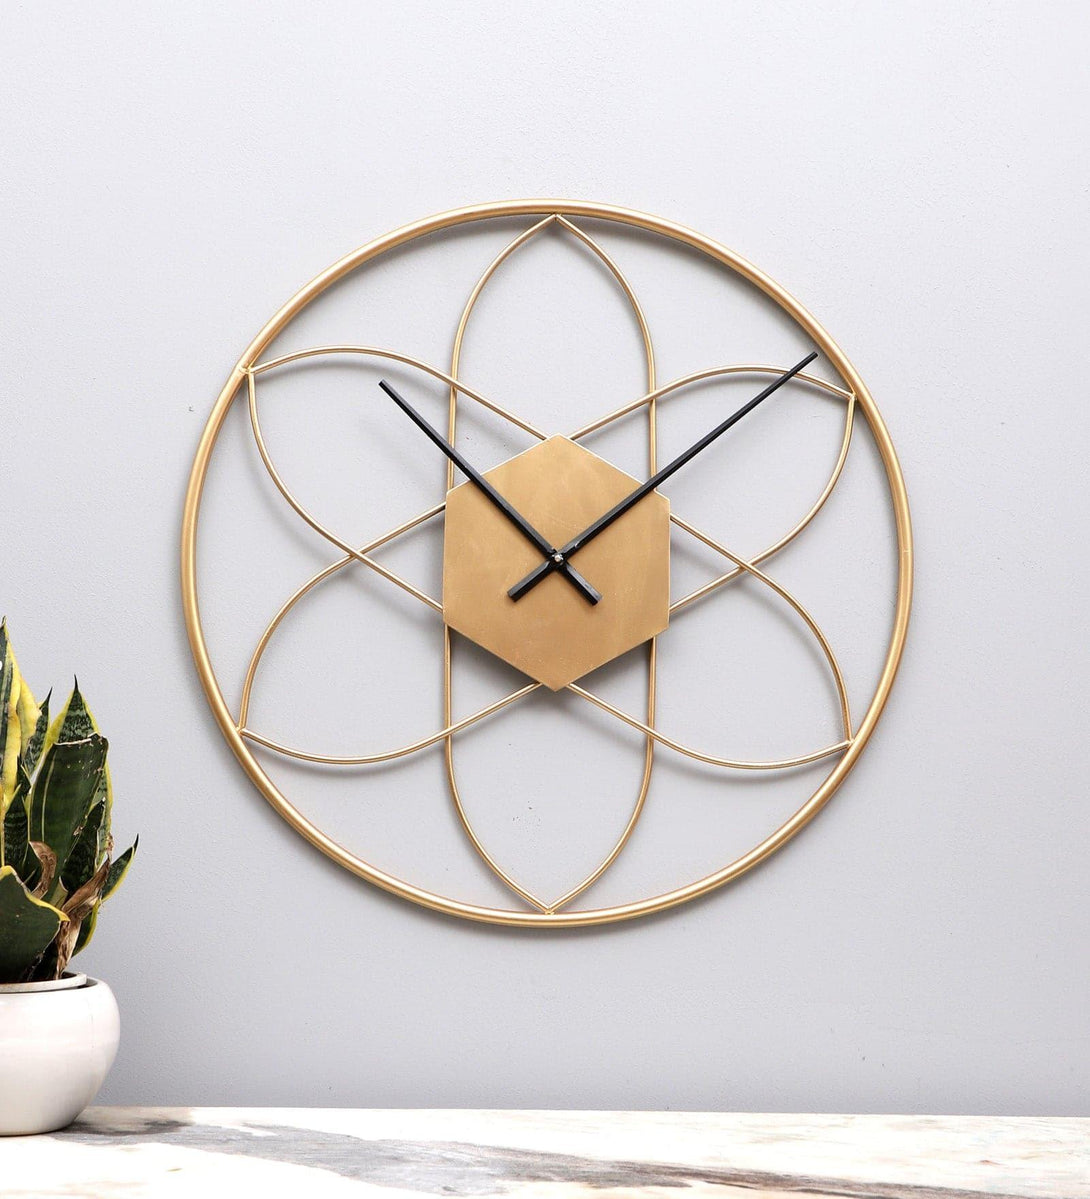 Buy Wall Clock - Flora Frisk Wall Clock at Vaaree online